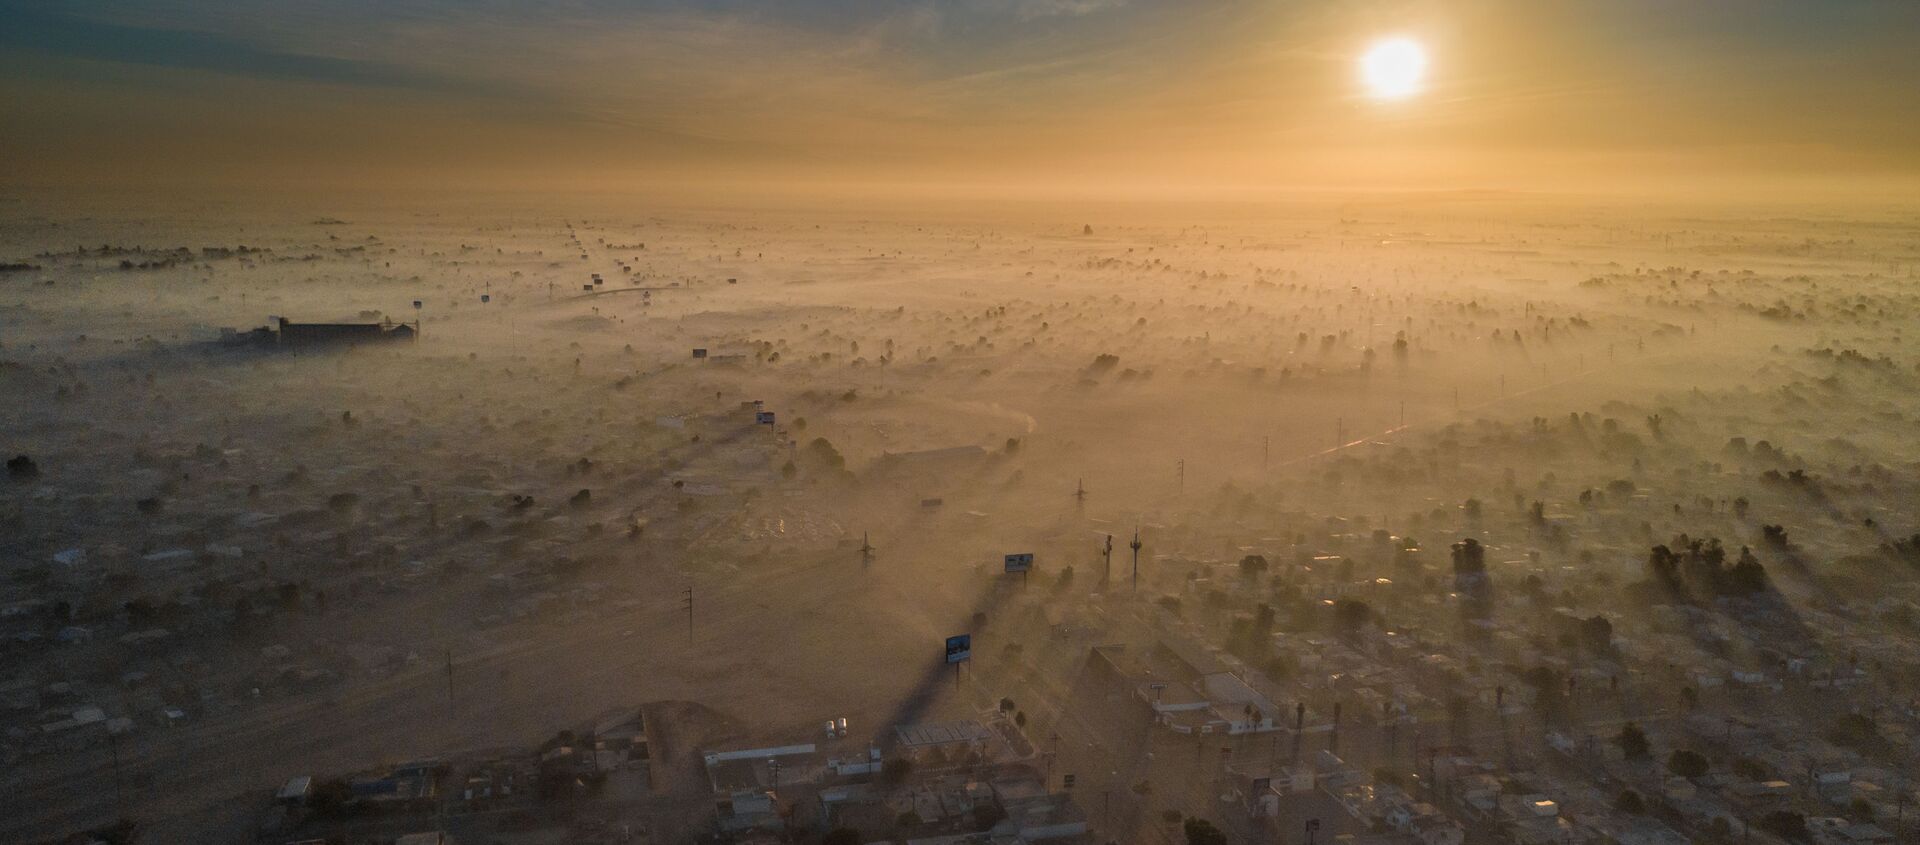 صورة بعنوان السنة الجديدة الملوثة، للمصور إليود جيل سامانيغو، الذي فاز في فئة جائزة المدن المستدامة لعام 2019، في مسابقة المصور البيئي لعام 2019 - سبوتنيك عربي, 1920, 26.02.2021